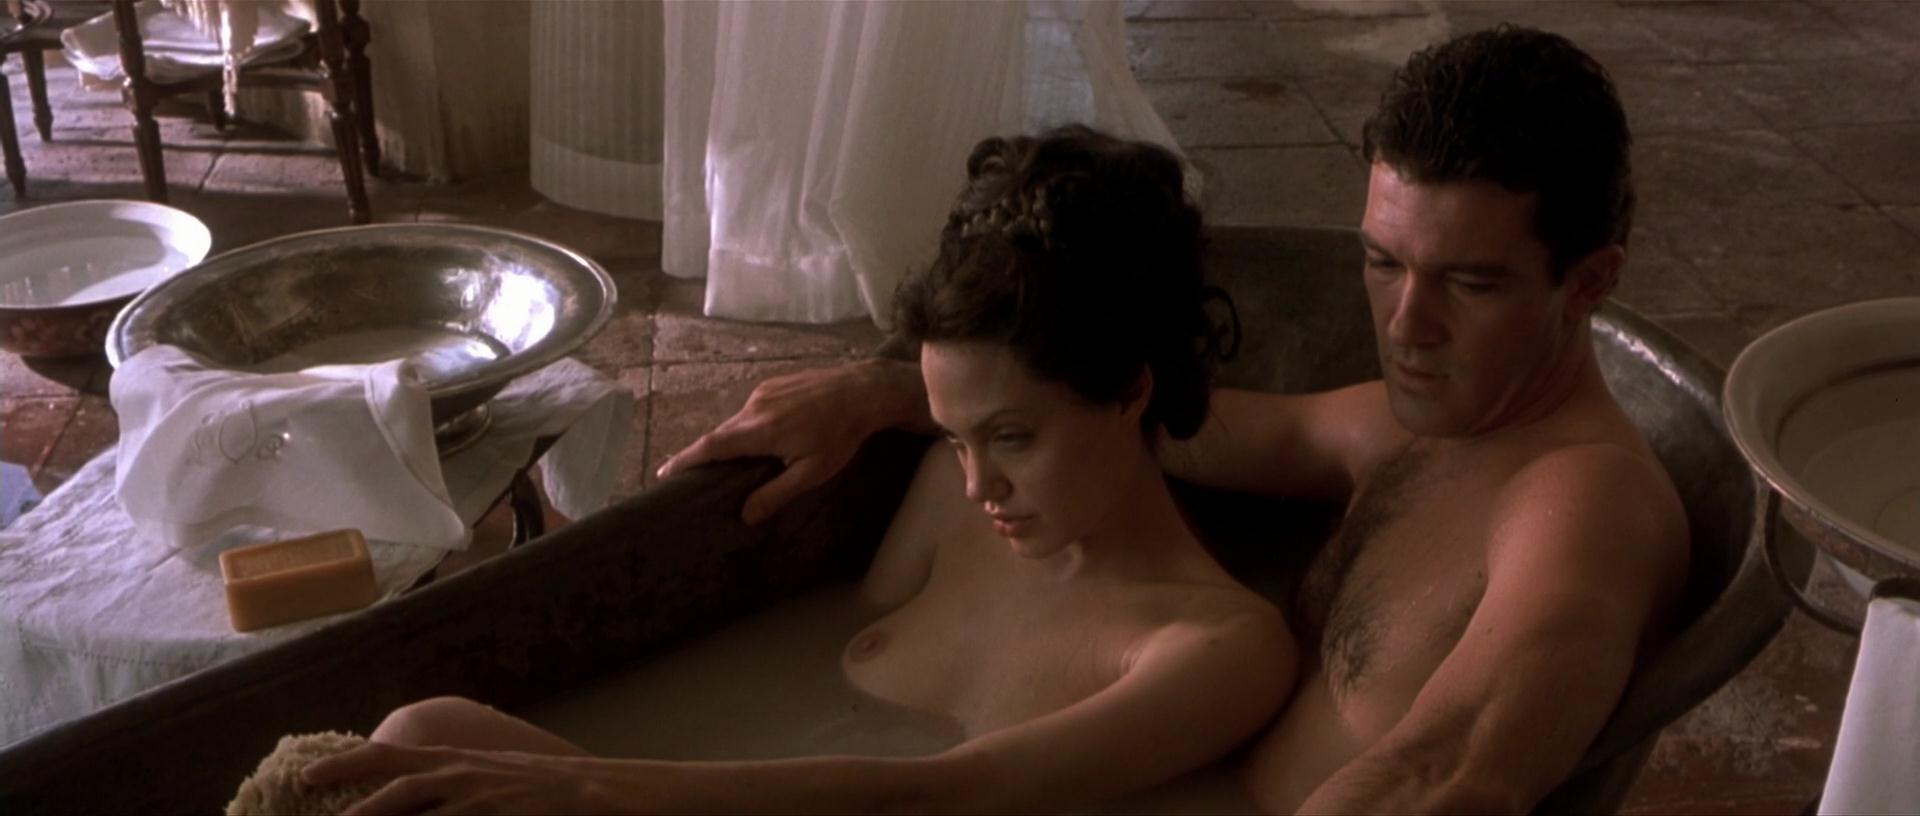 Angelina nude movie